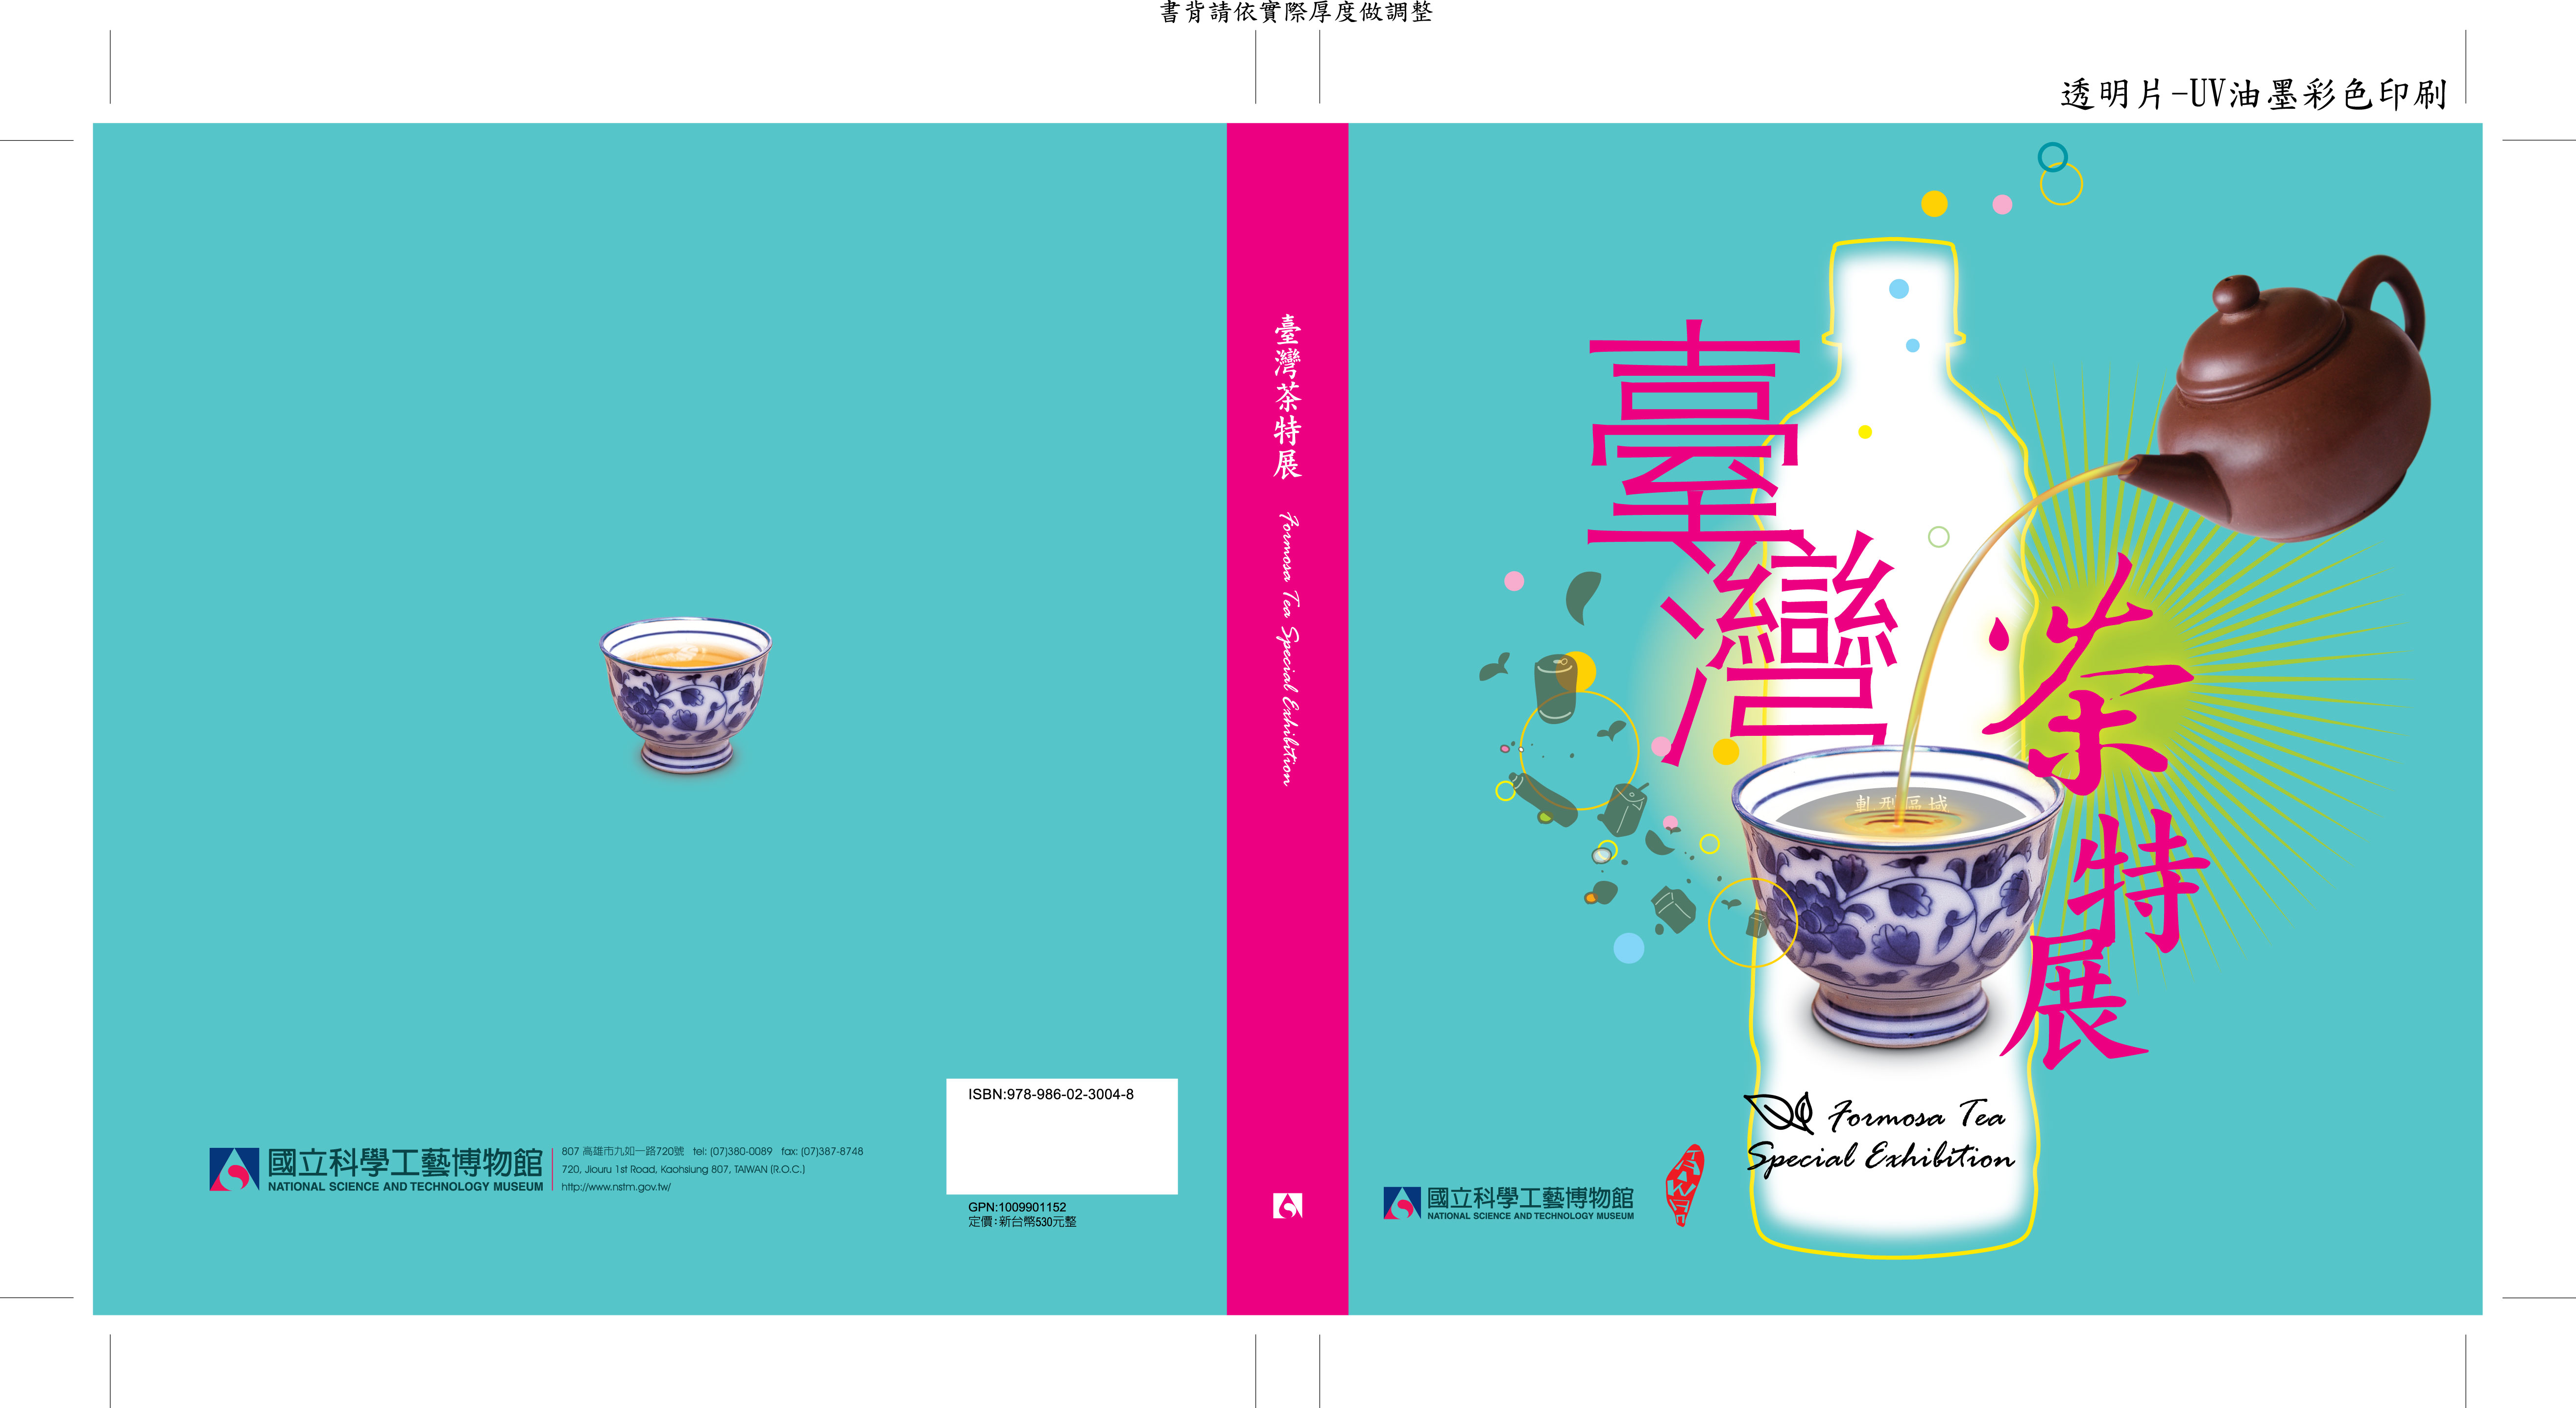 Formosa Tea Special Exhibition Catalogue